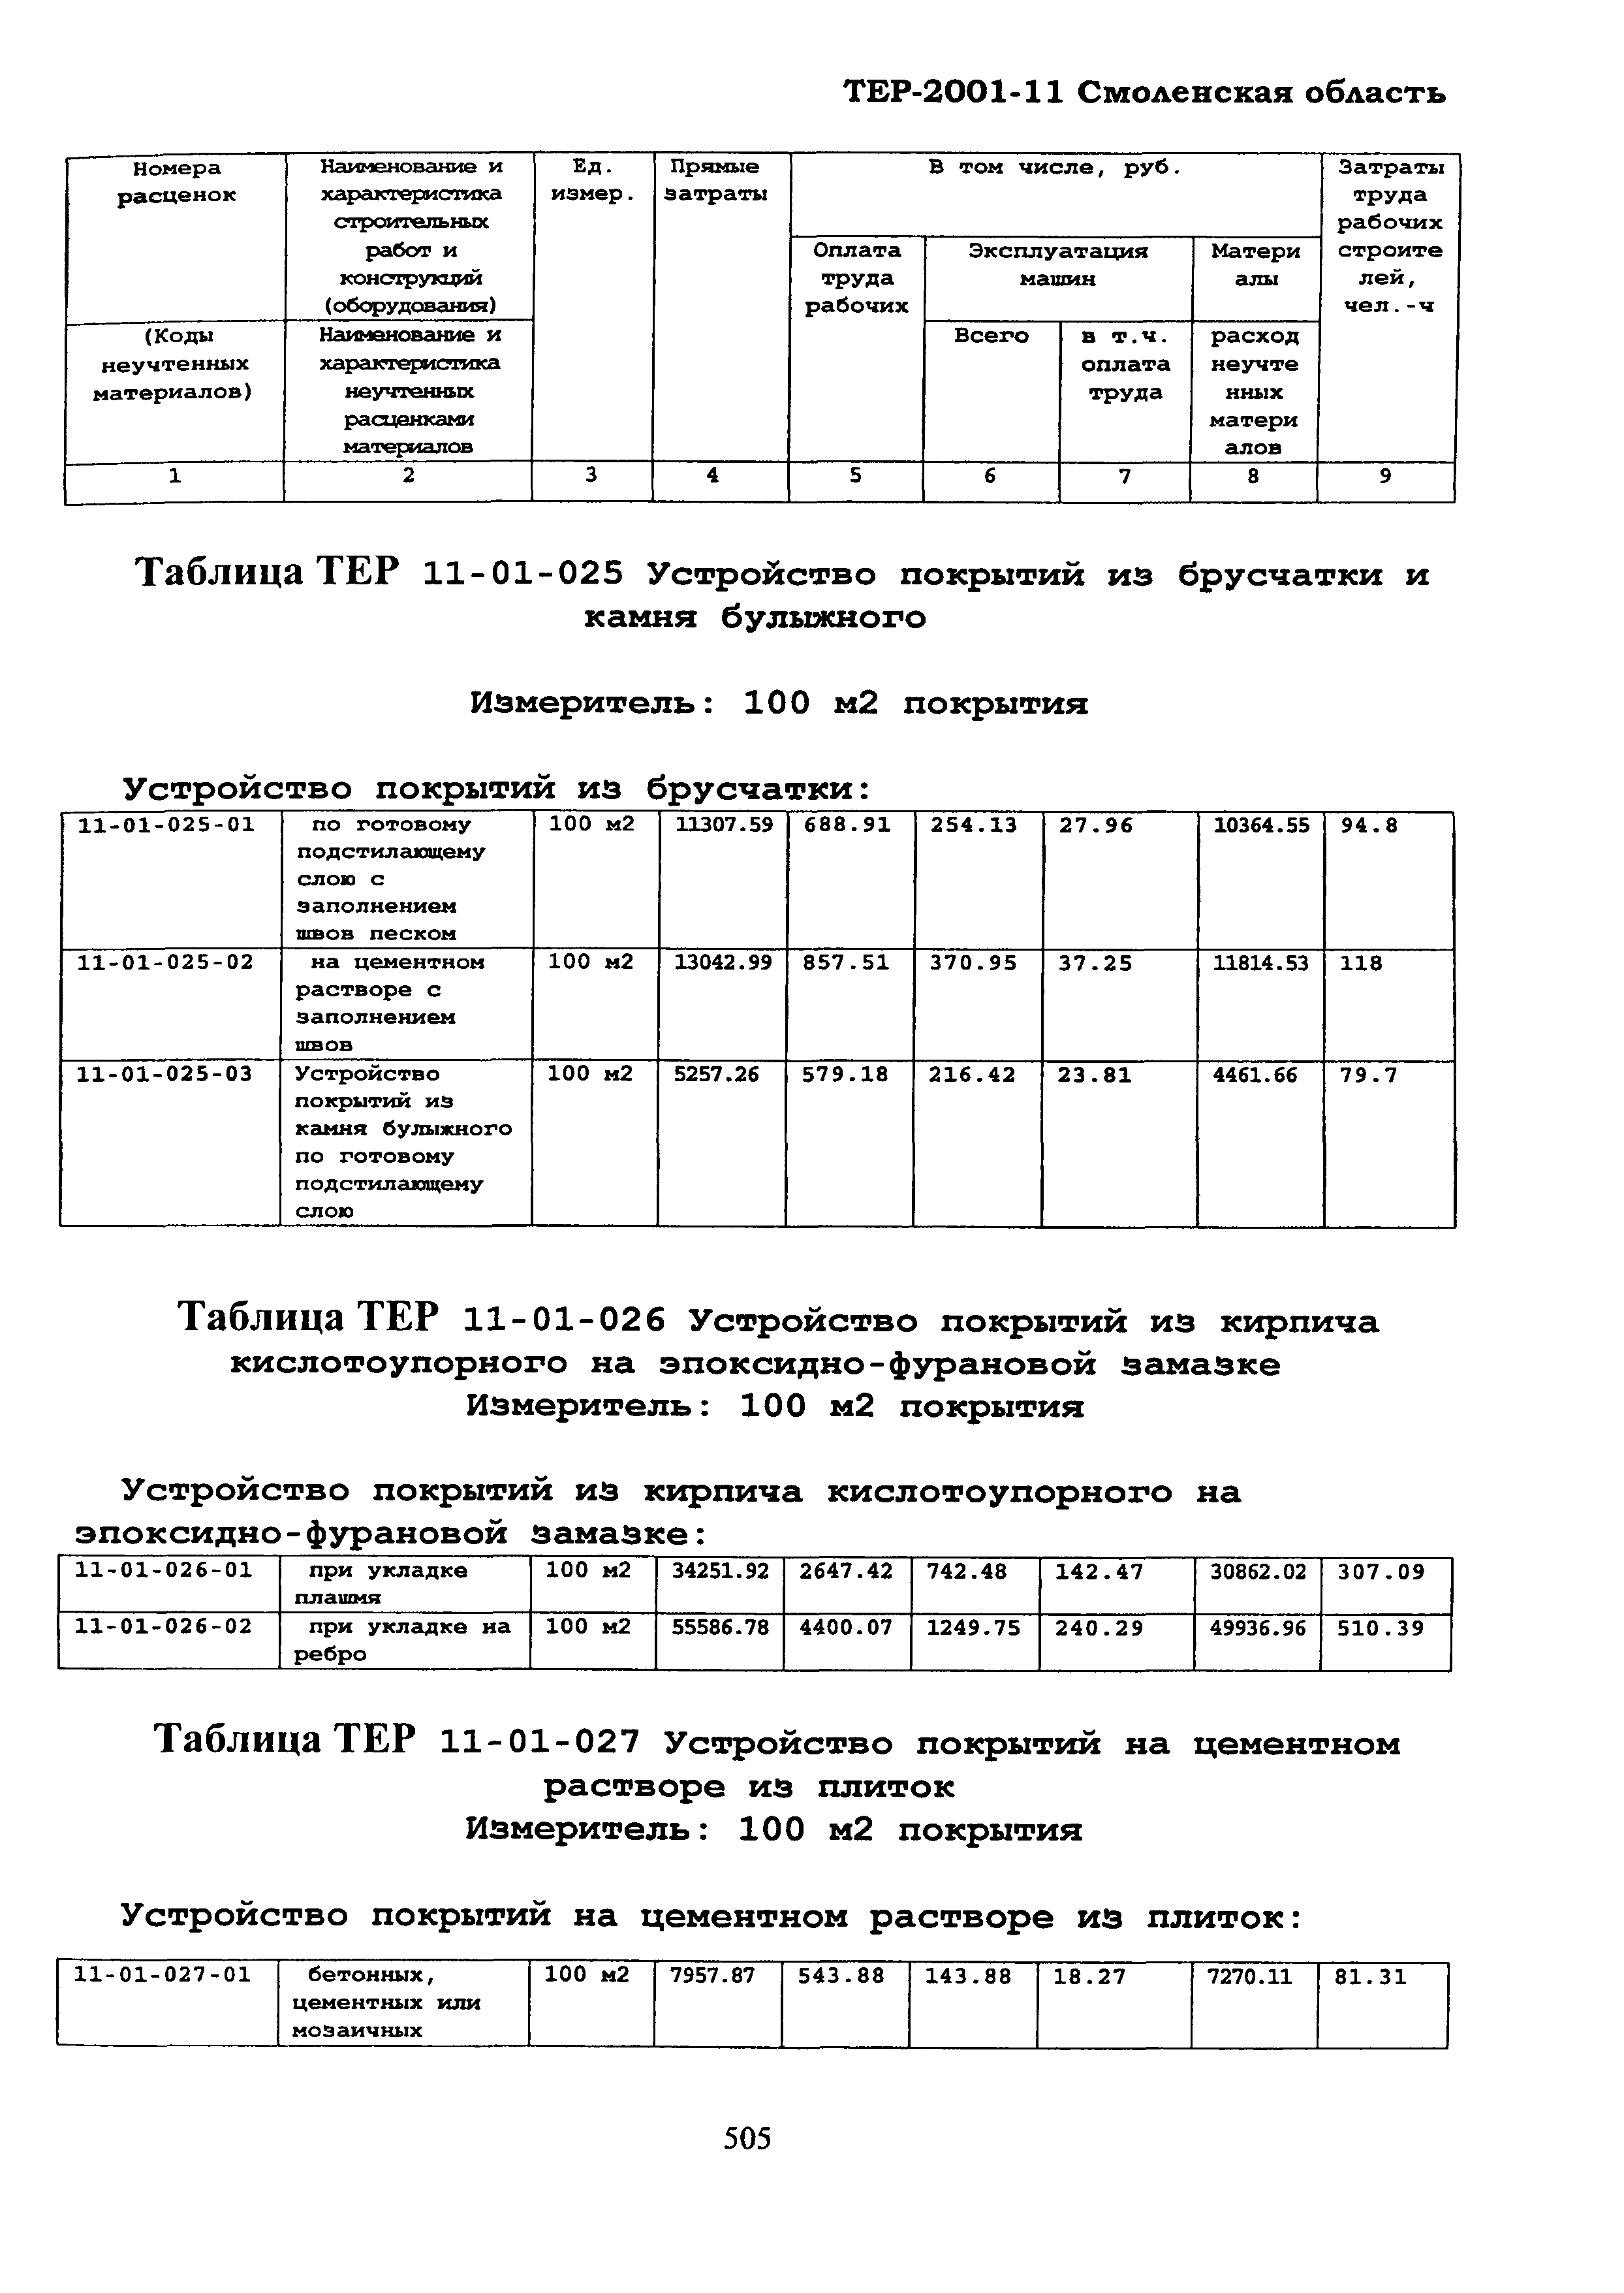 ТЕР Смоленской обл. 2001-11